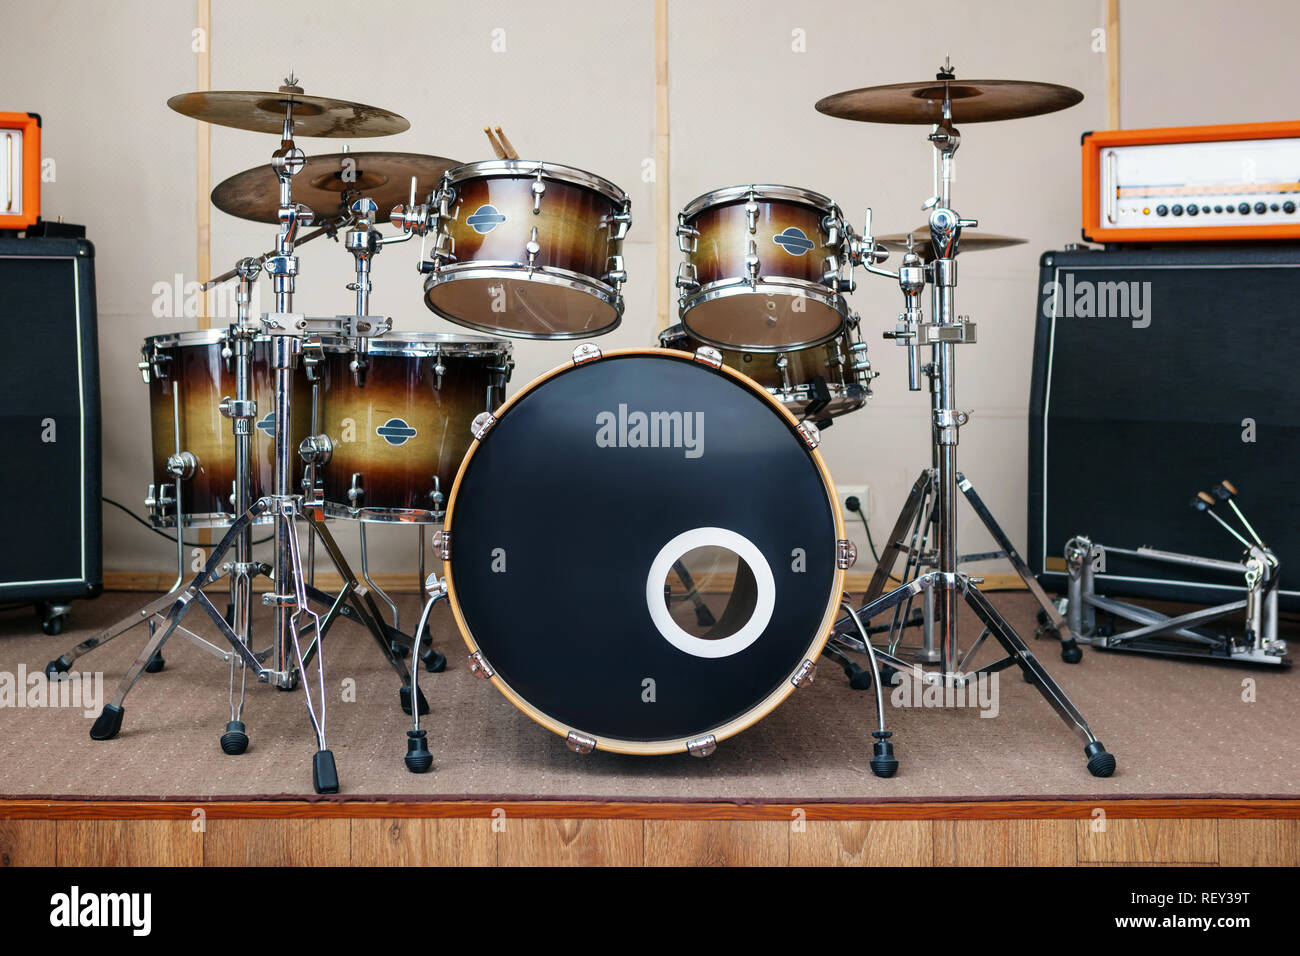 Las salas de ensayo de música con el kit de batería y equipo musical  Fotografía de stock - Alamy